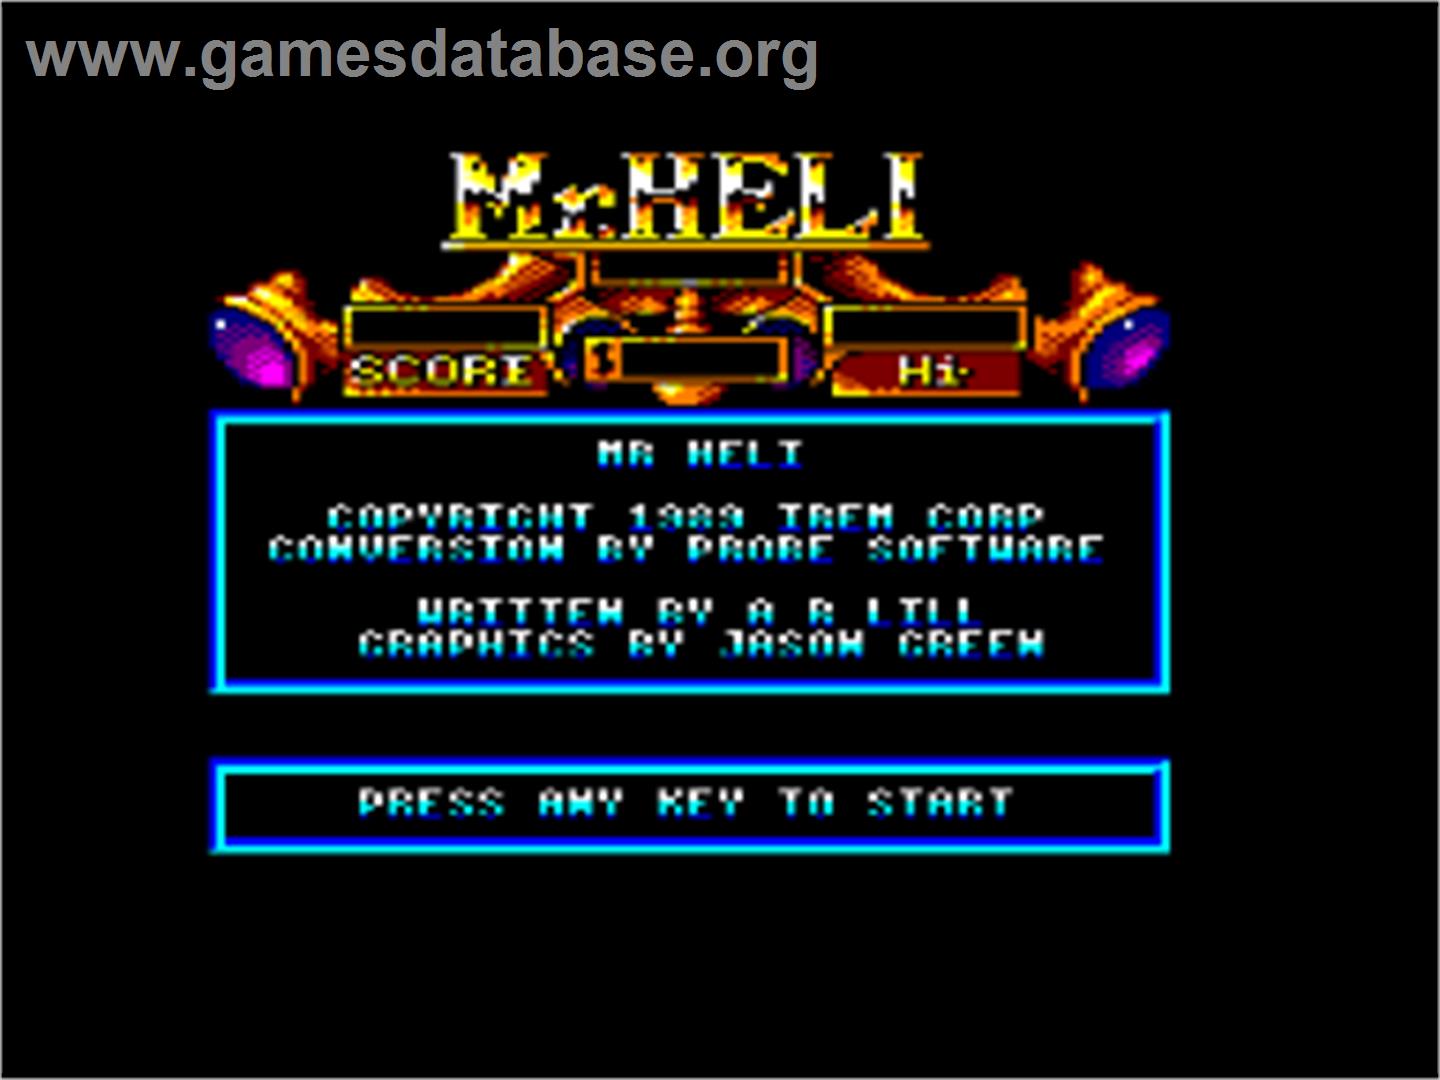 Mr. Heli - Amstrad CPC - Artwork - Title Screen